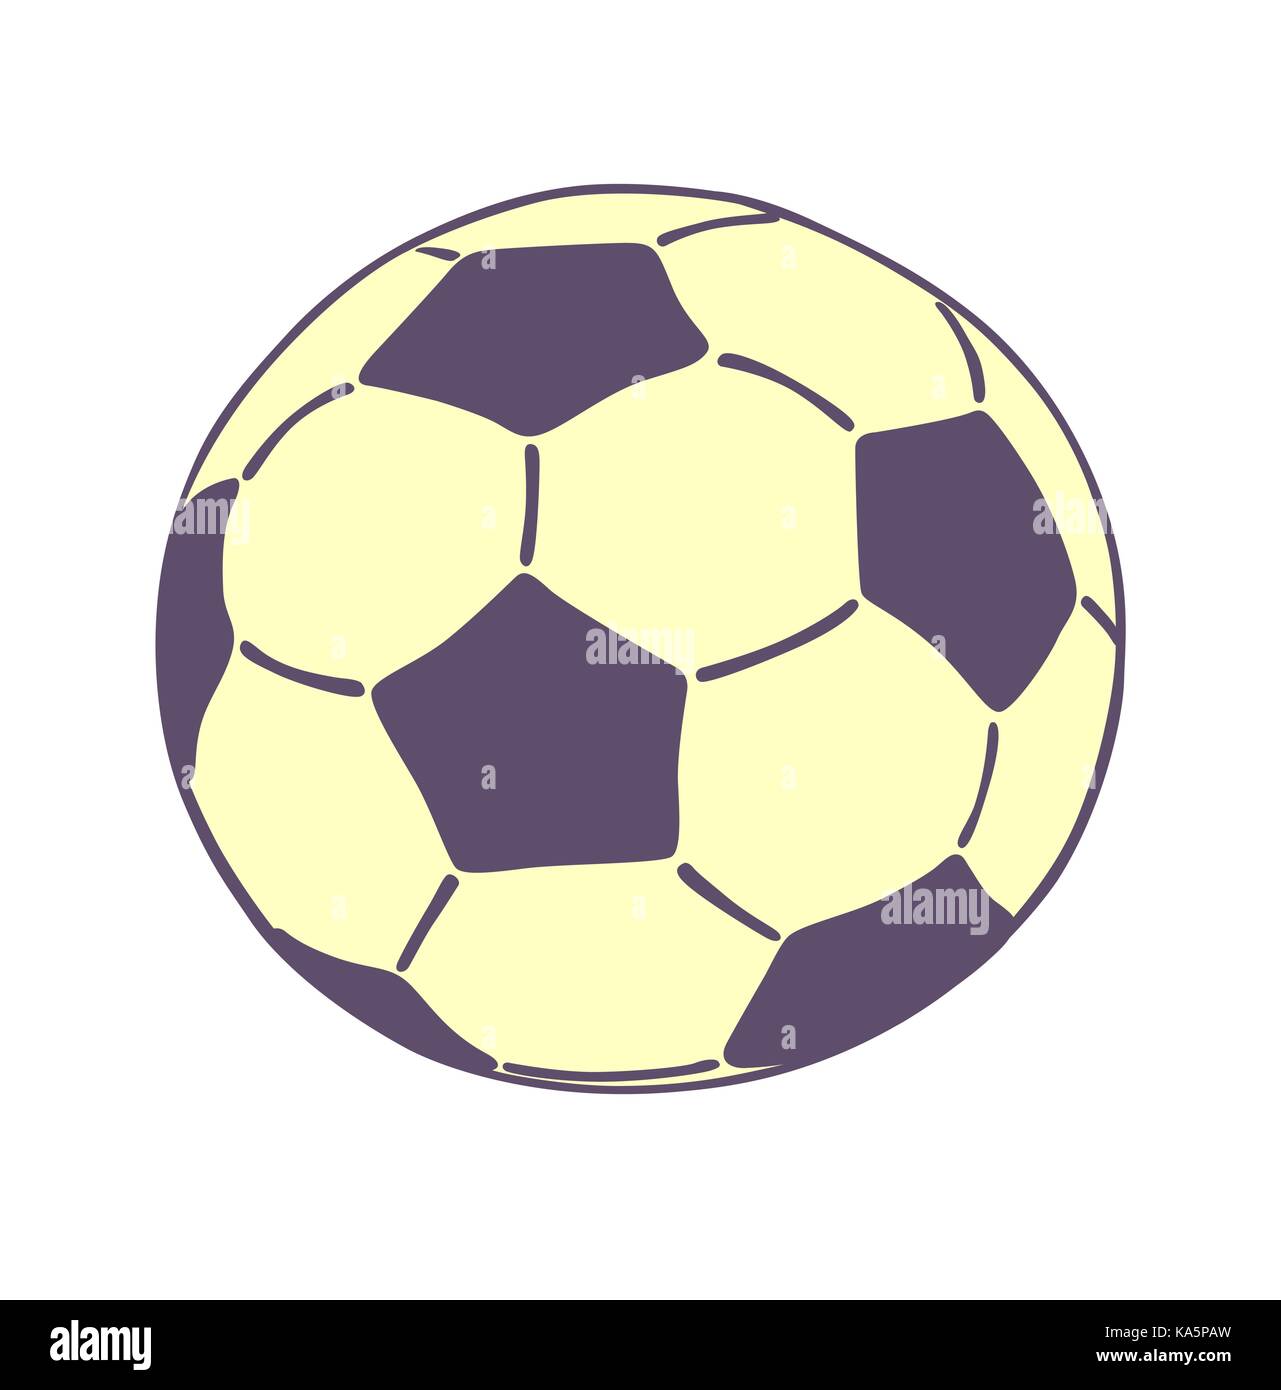 Fußball-Symbol auf weißem Hintergrund. Flache vector Abbildung in Farbe. Stock Vektor